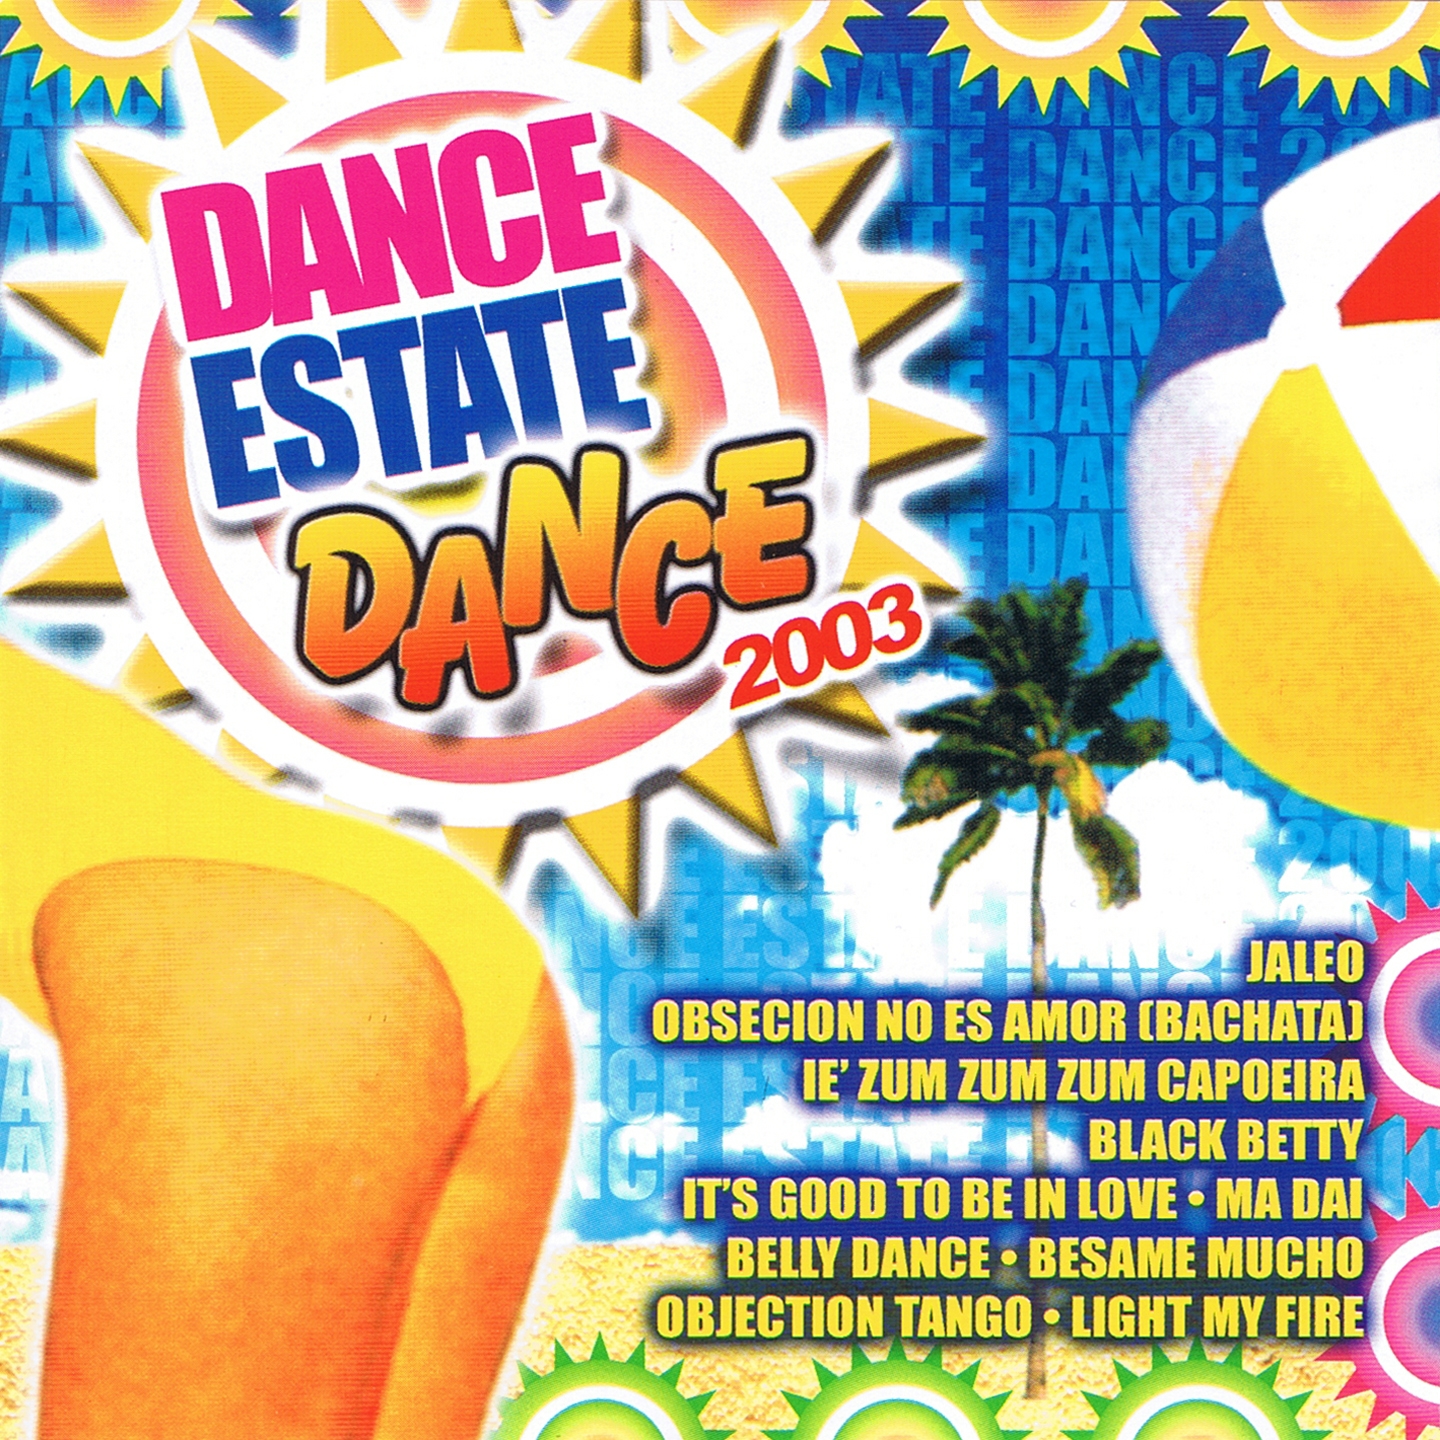 Dance Estate Dance 2003